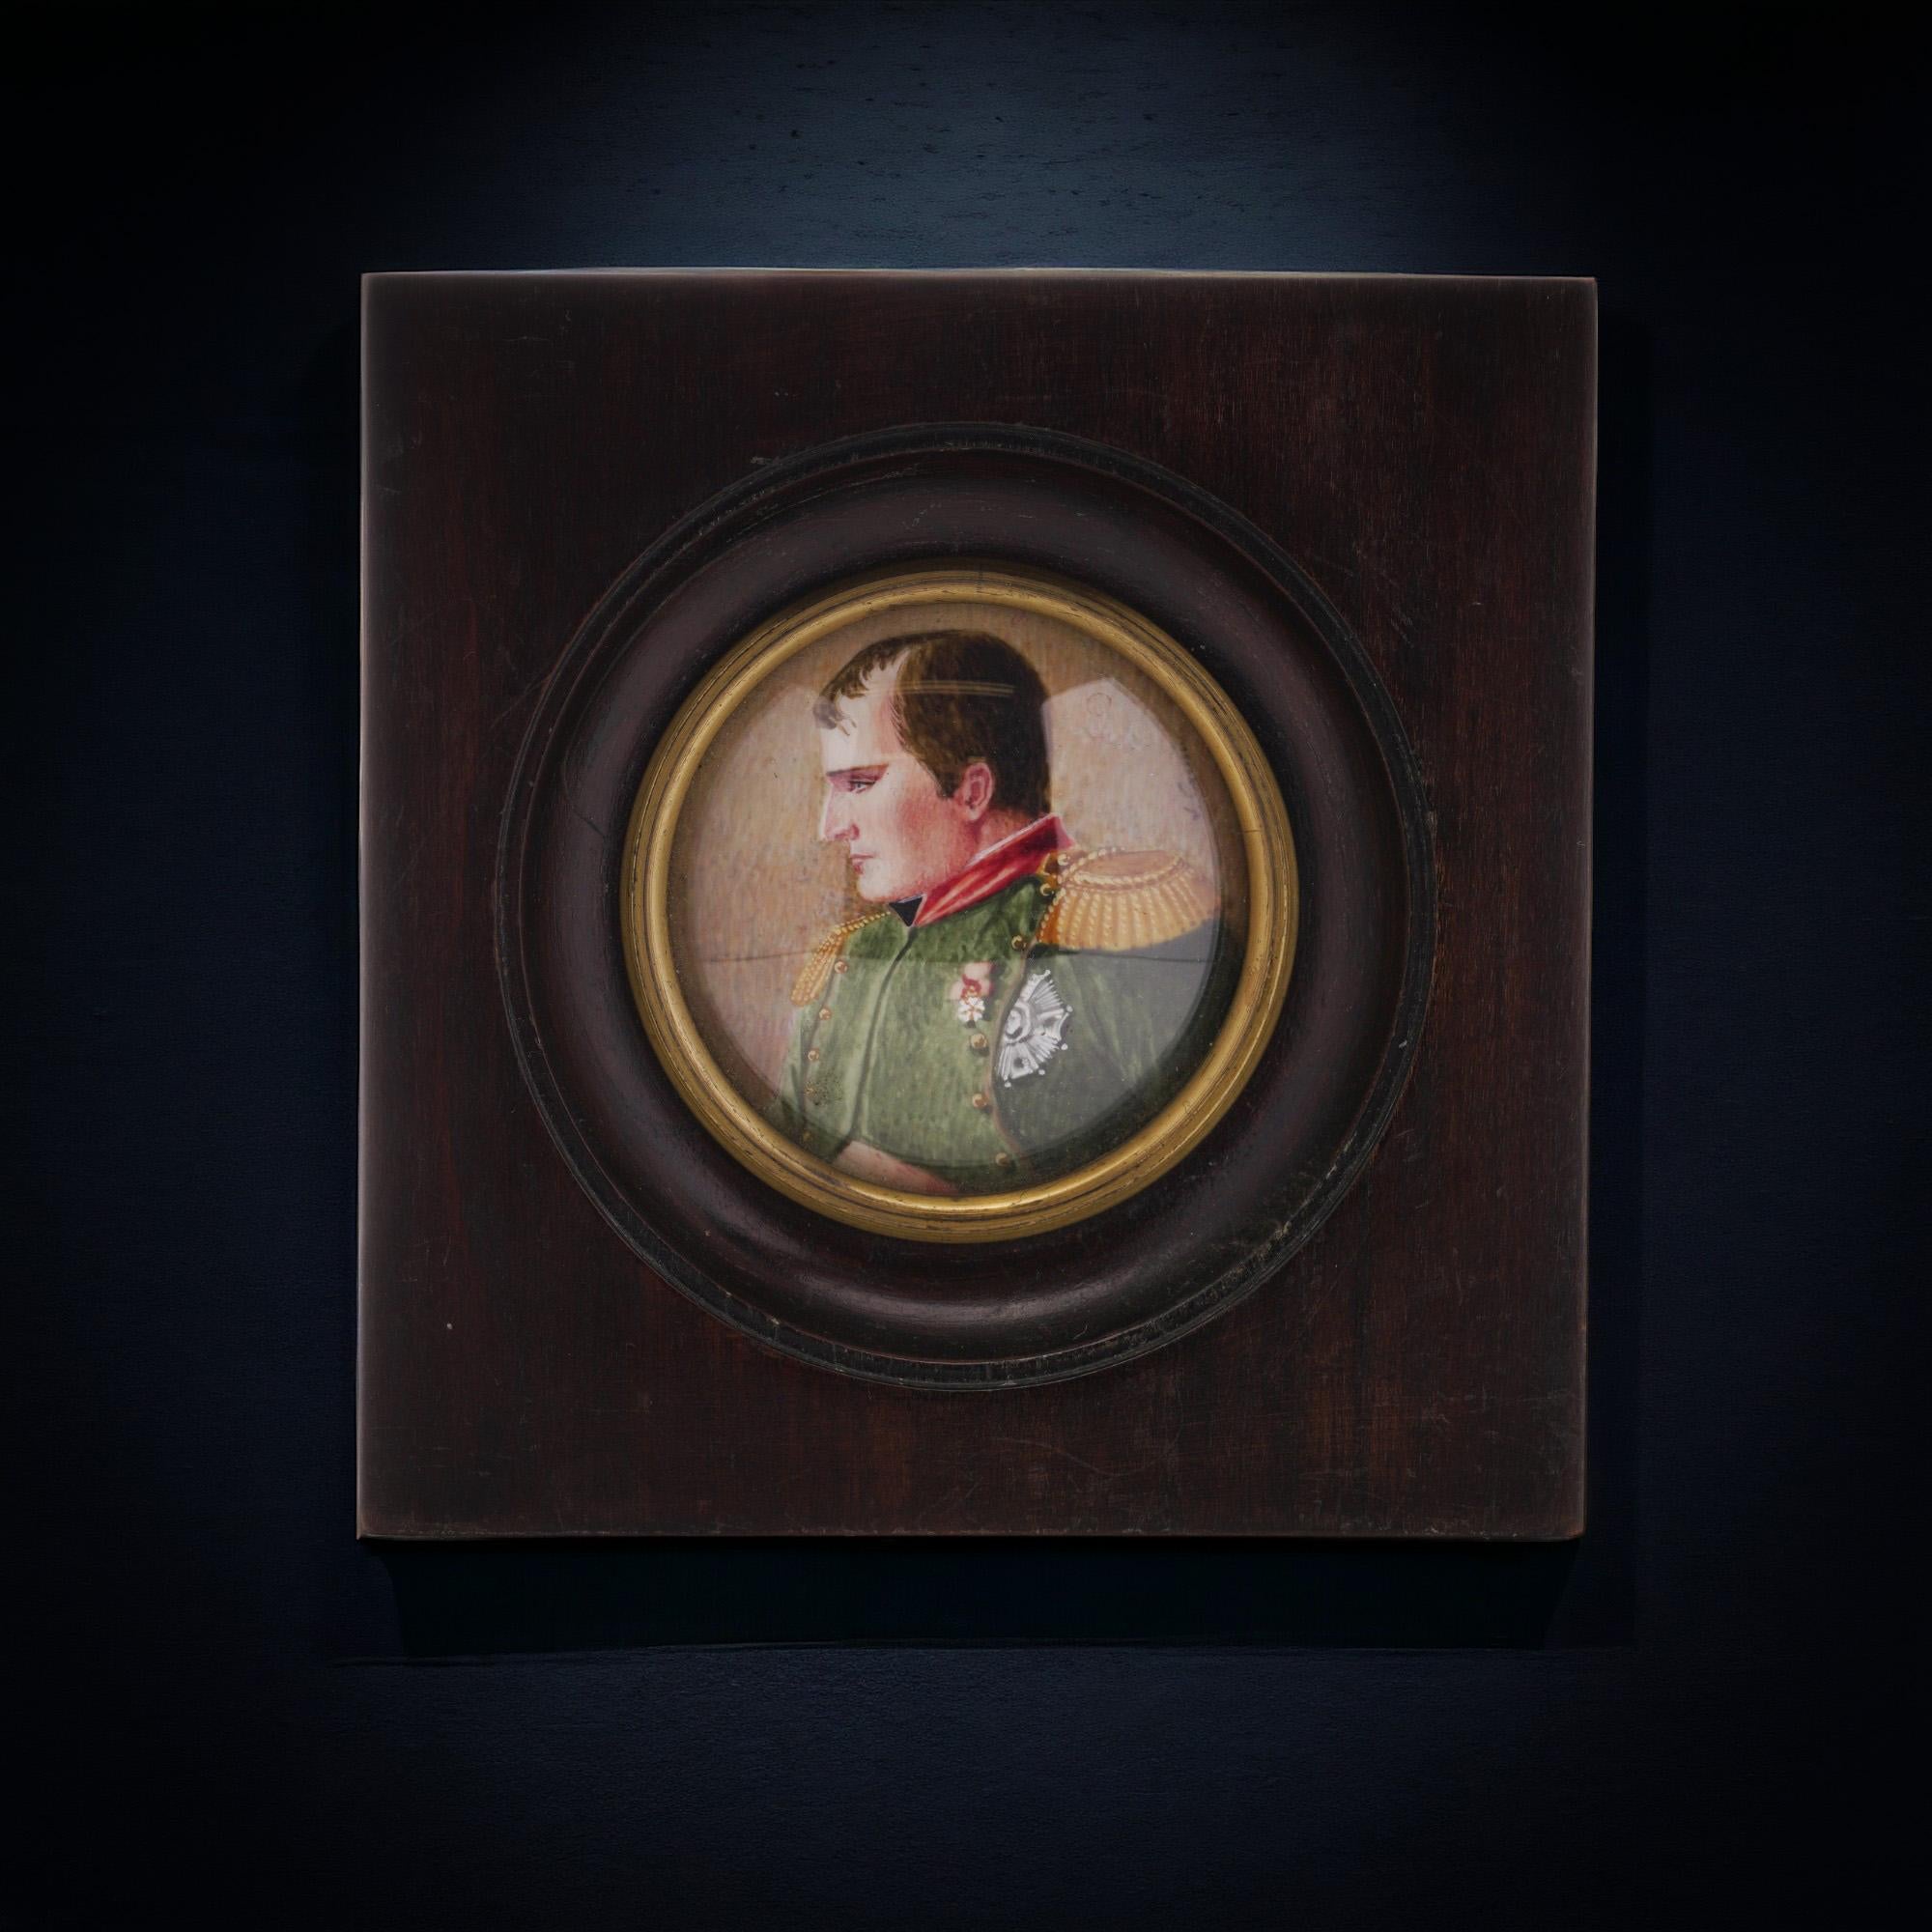 Portrait miniature de Napoléon Ier peint à la main à l'aquarelle et encadré de bois d'acajou, datant du XIXe siècle. 
La miniature représente un portrait de Napoléon Ier tournant son visage vers la droite.
Le dos n'a pas été ouvert pour être